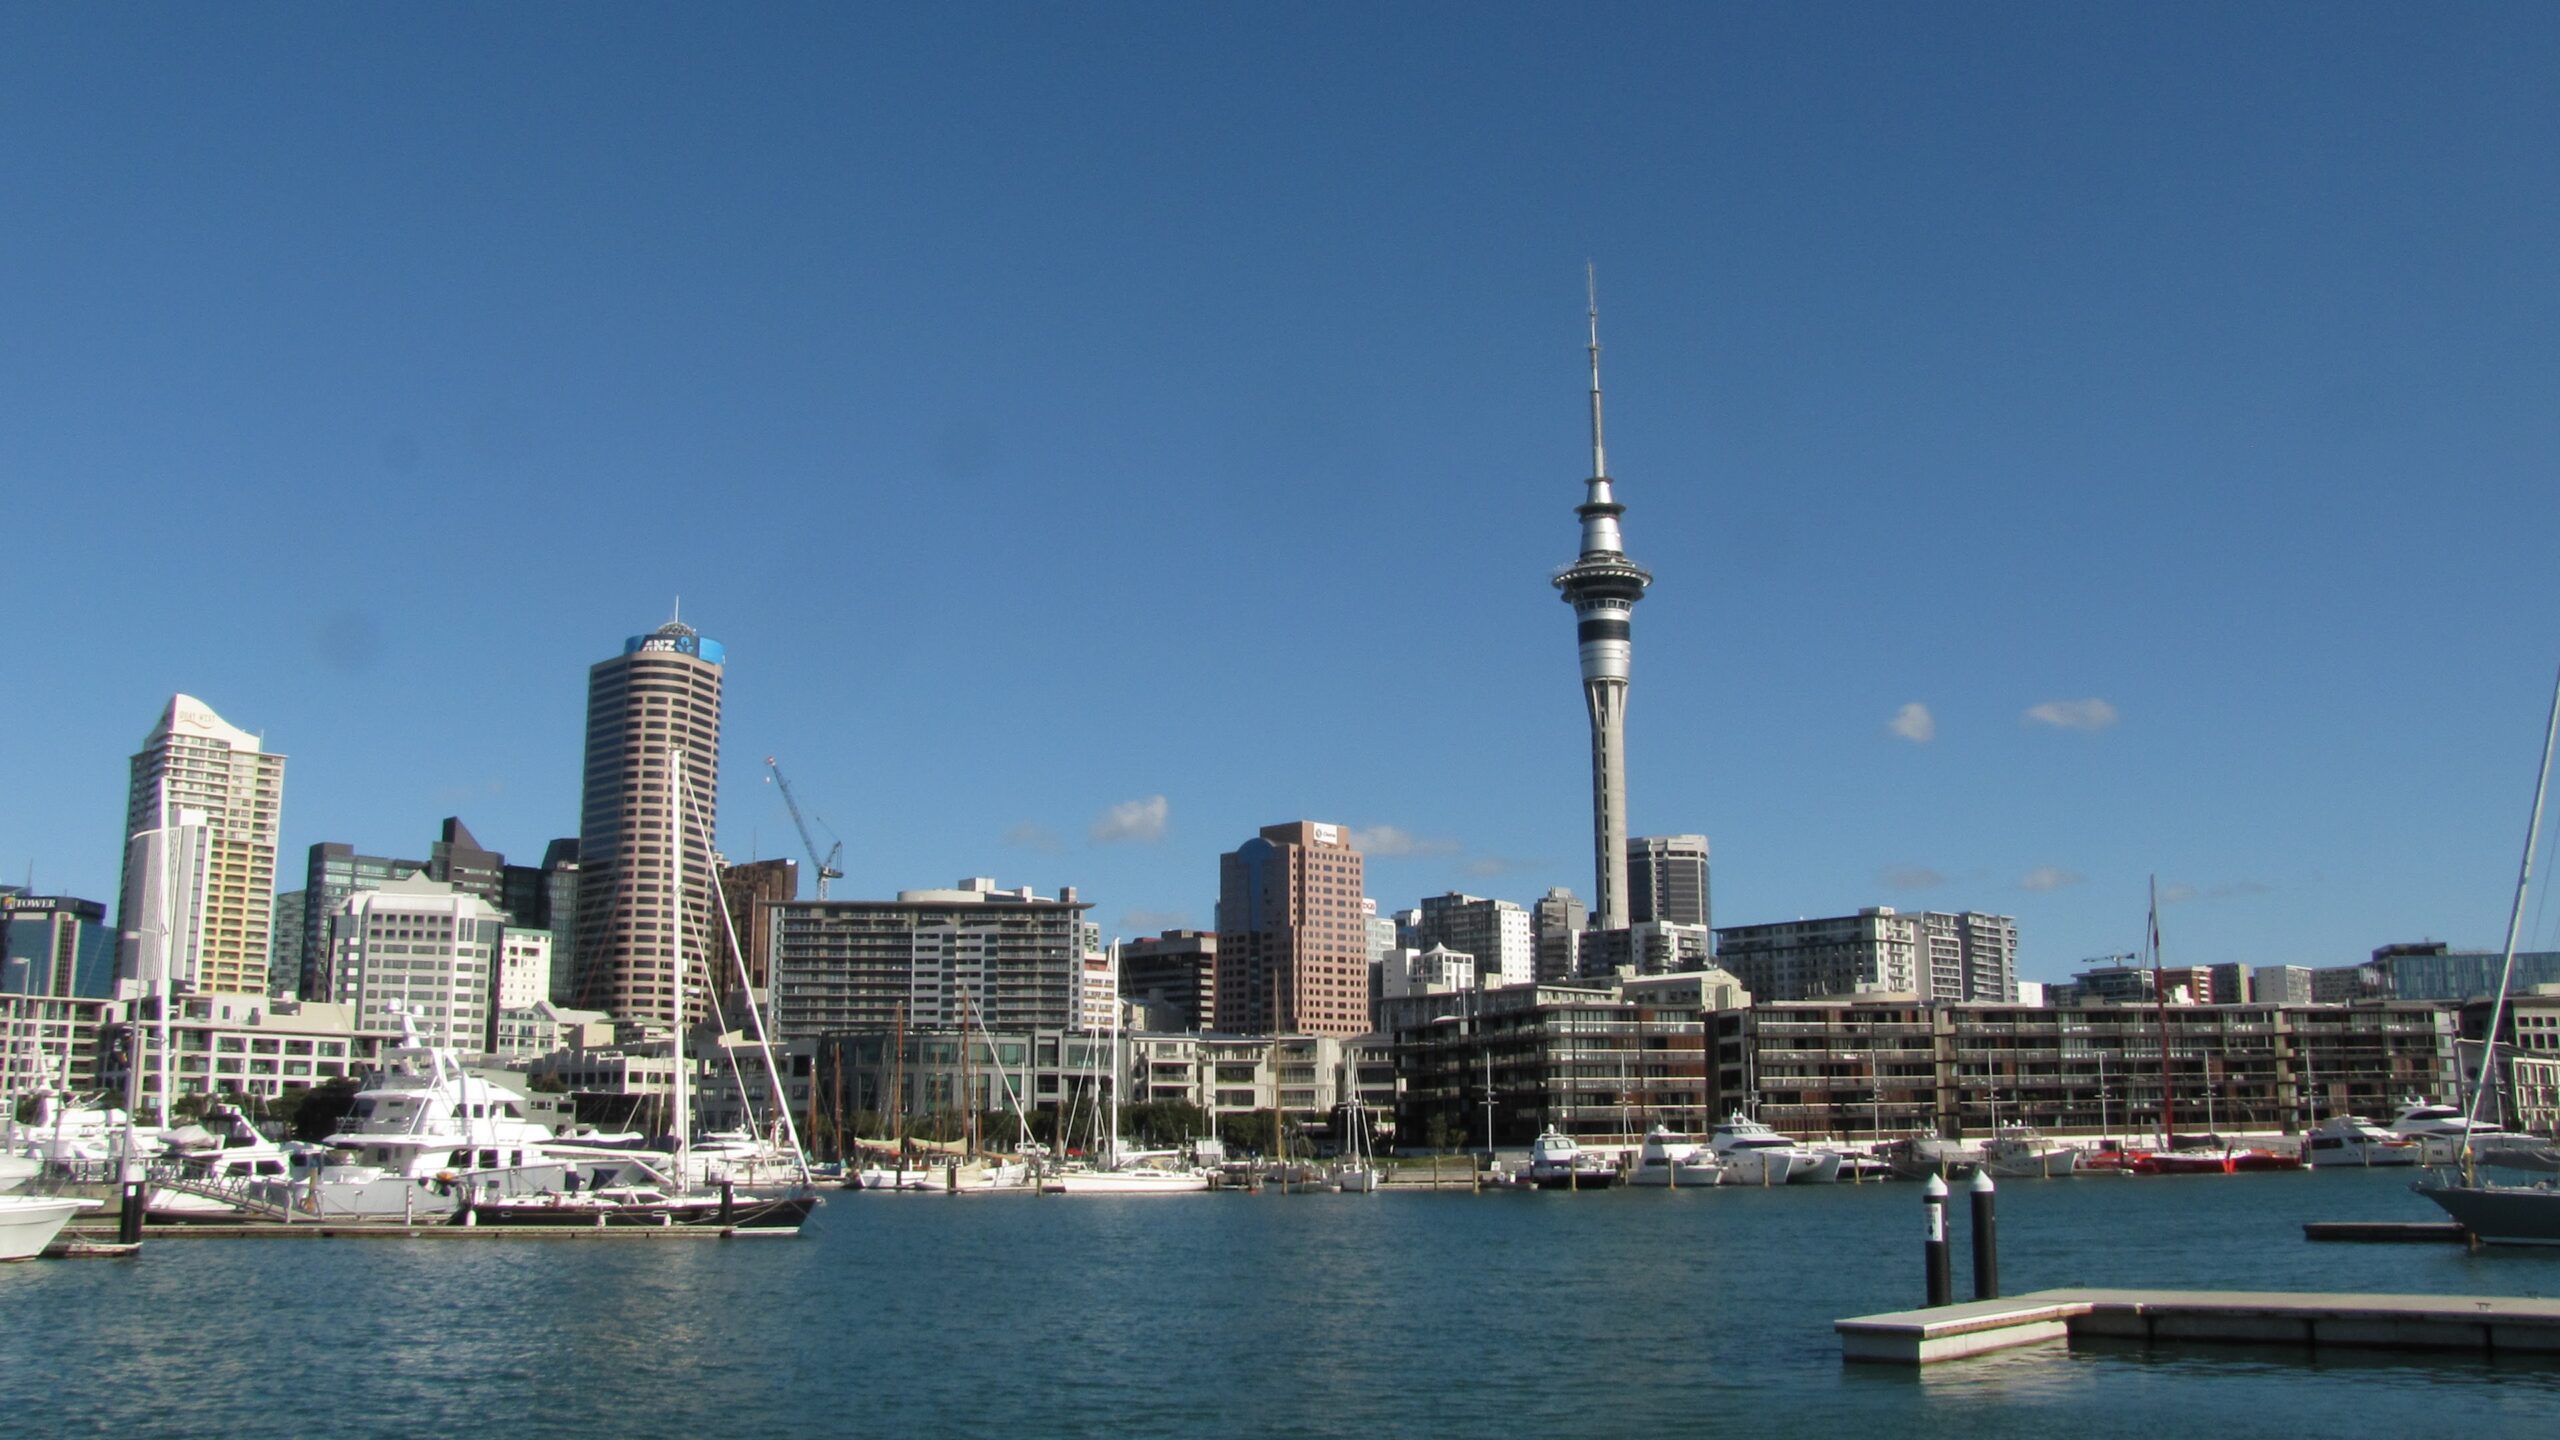 Přečtete si více ze článku Poslední týden v Aucklandu